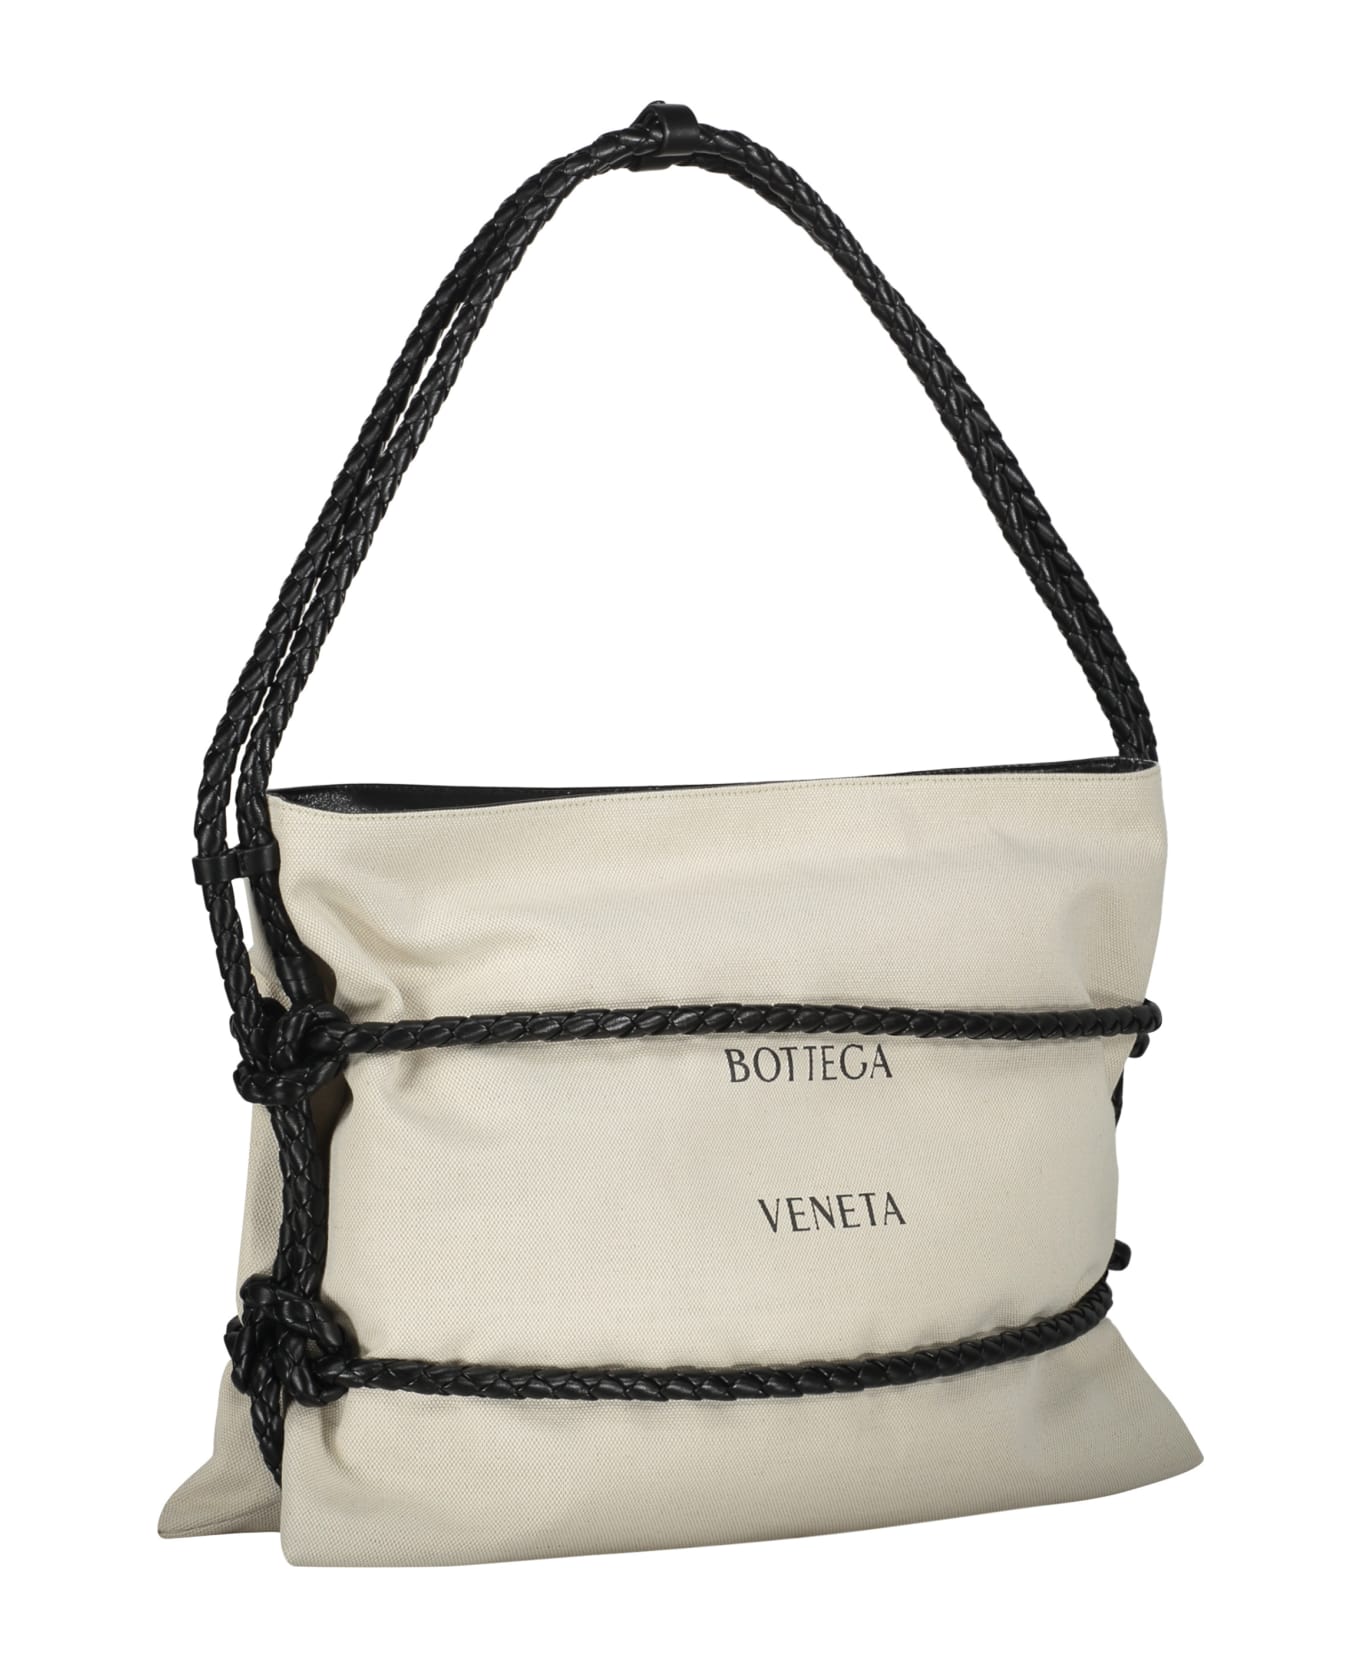 Bottega Veneta 'quadronno Medium' Shopper Bag - Ecru トートバッグ